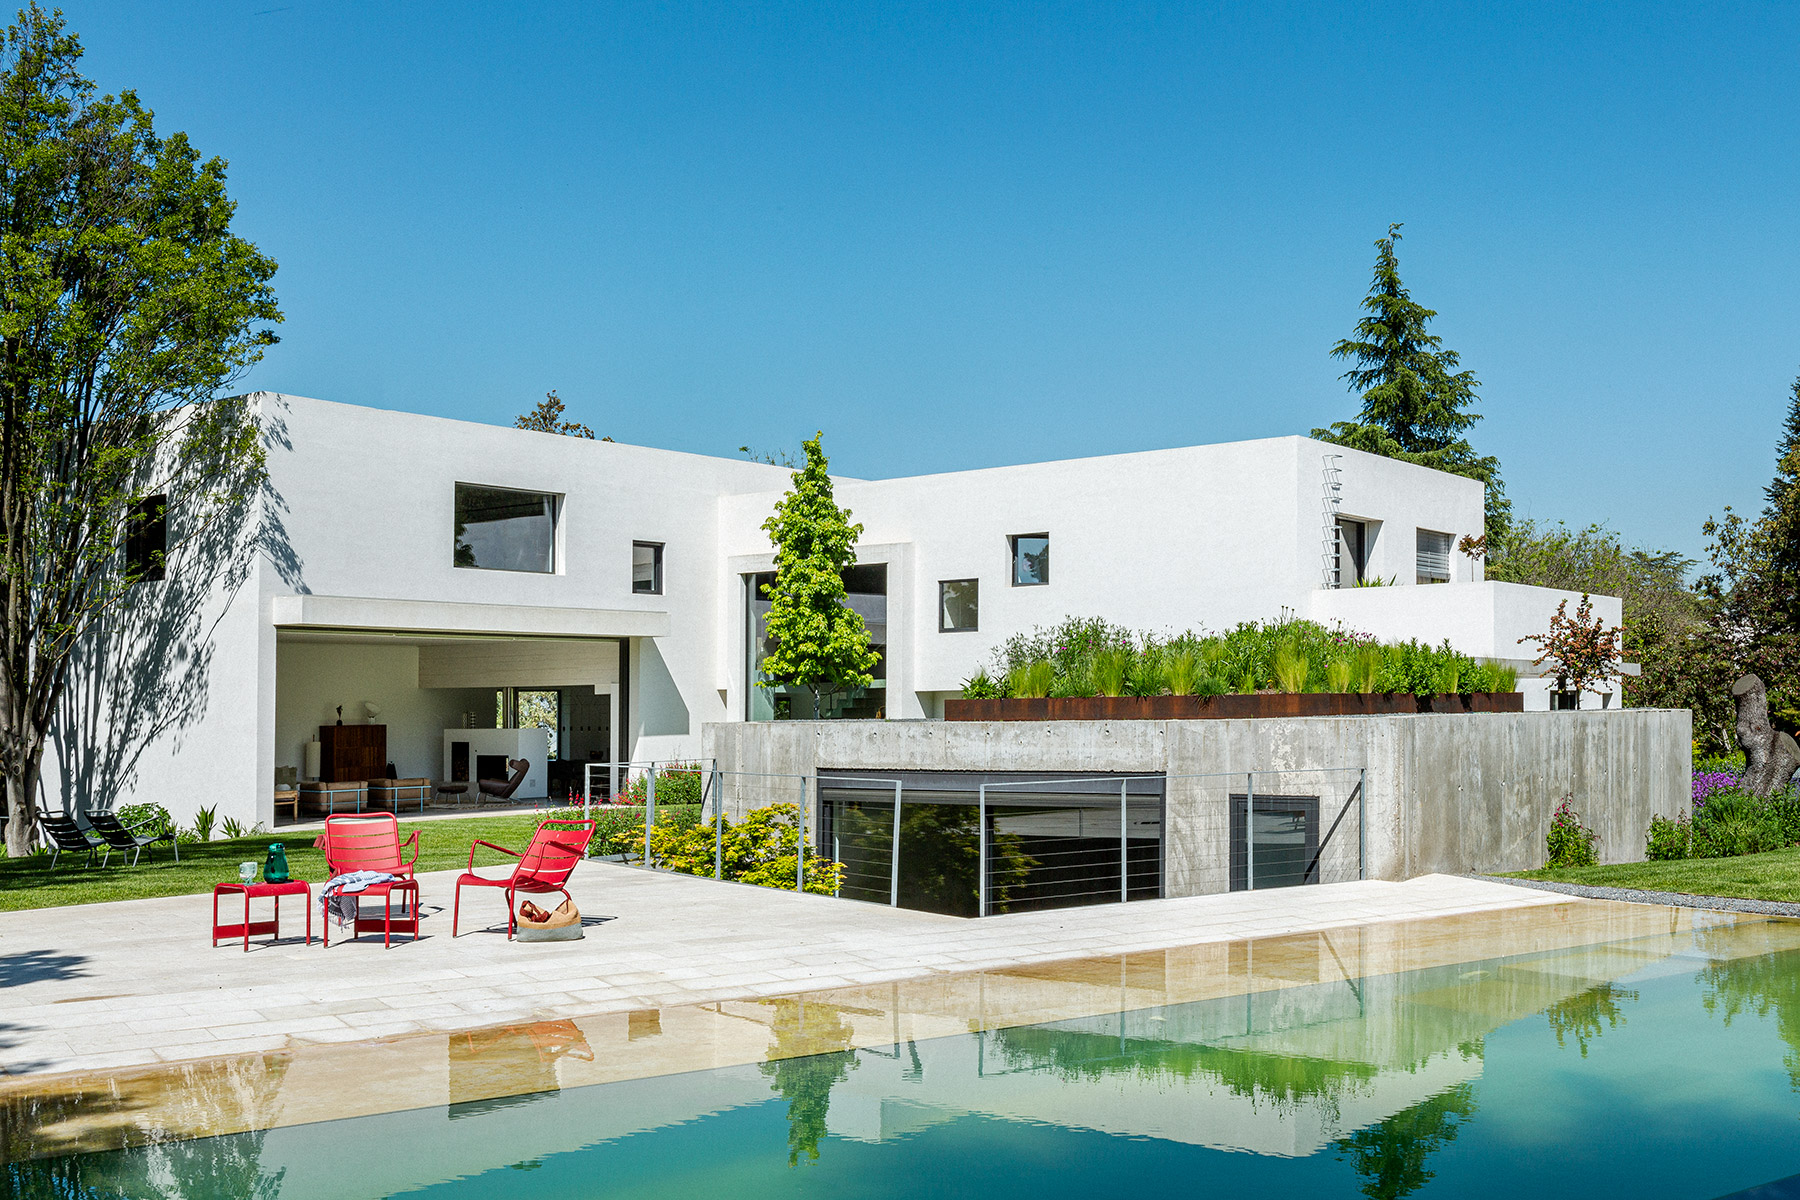 Ábaton diseña una casa en la zona norte de Madrid integrada en un paisaje de encinas, con un sistema constructivo que consigue una alta eficiencia térmica